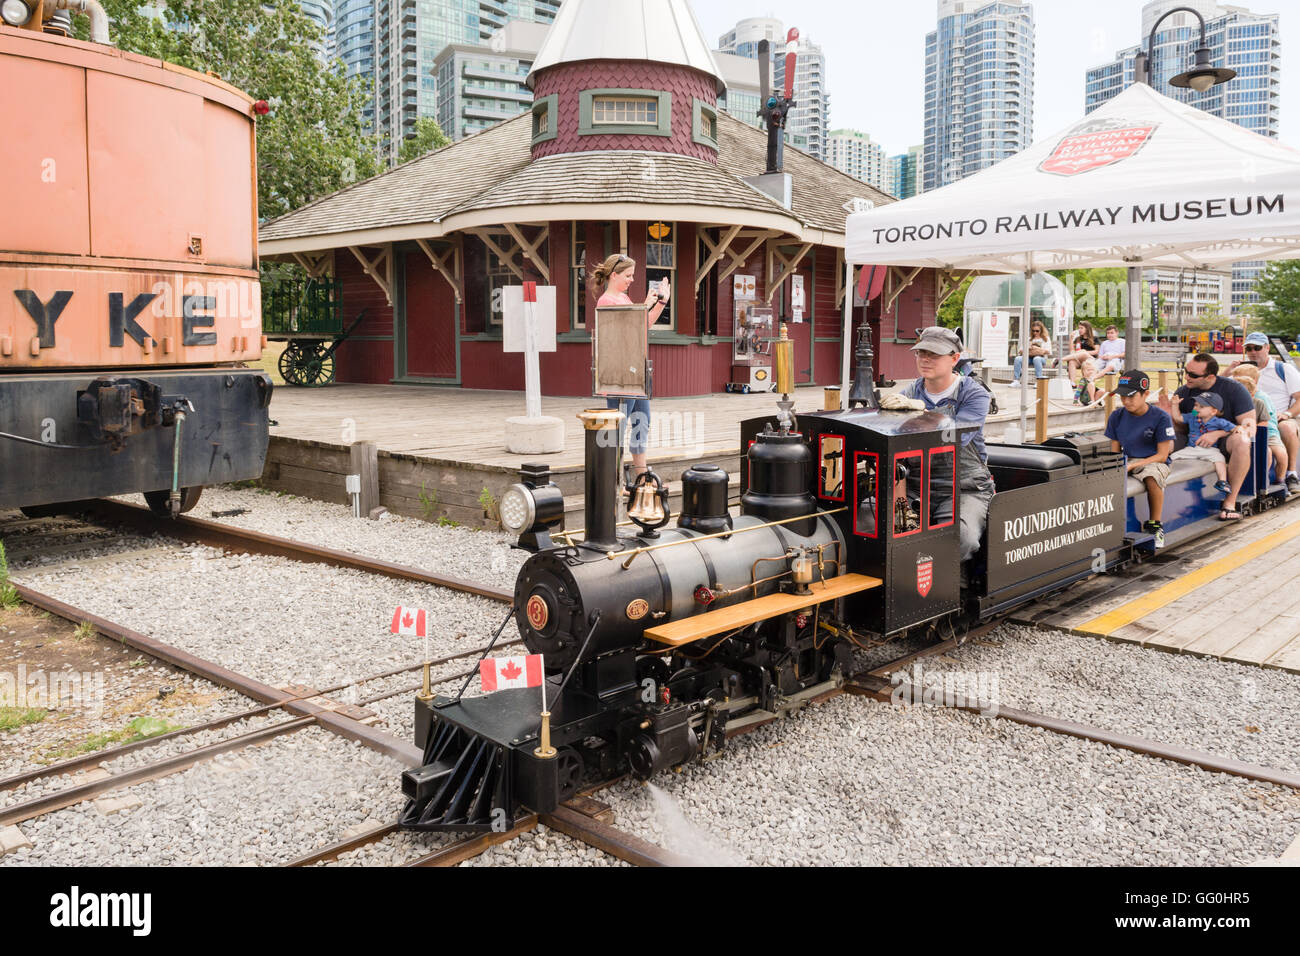 Musée ferroviaire de Toronto - train à vapeur miniature au Roundhouse Park, Toronto, Canada Banque D'Images